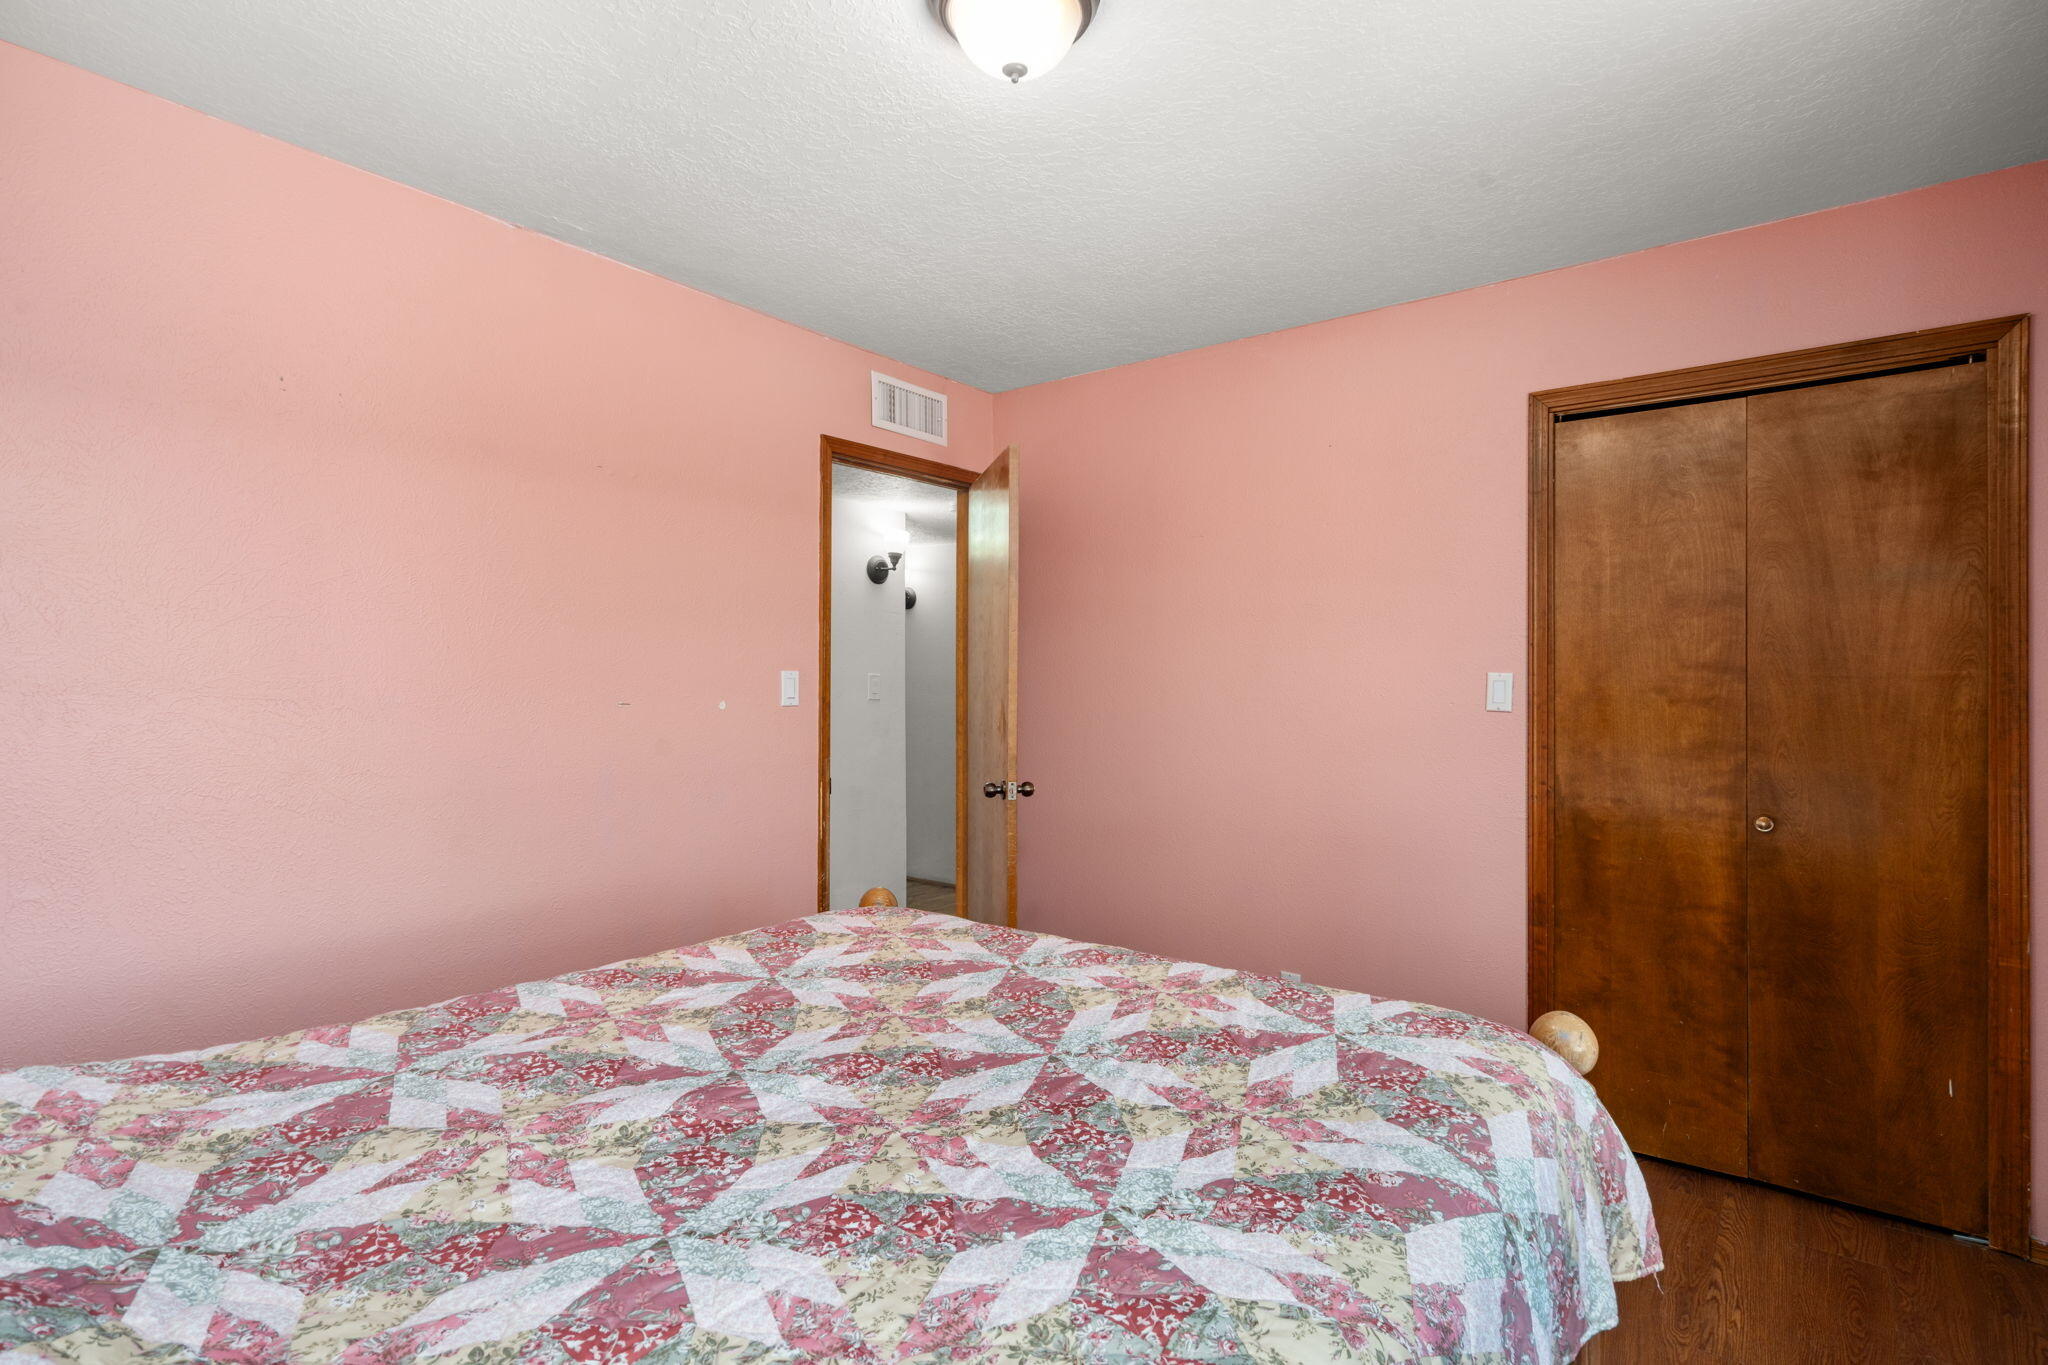 7204 Del Pasado NW, Albuquerque, New Mexico 87120, 3 Bedrooms Bedrooms, ,2 BathroomsBathrooms,Residential,For Sale,7204 Del Pasado NW,1061826